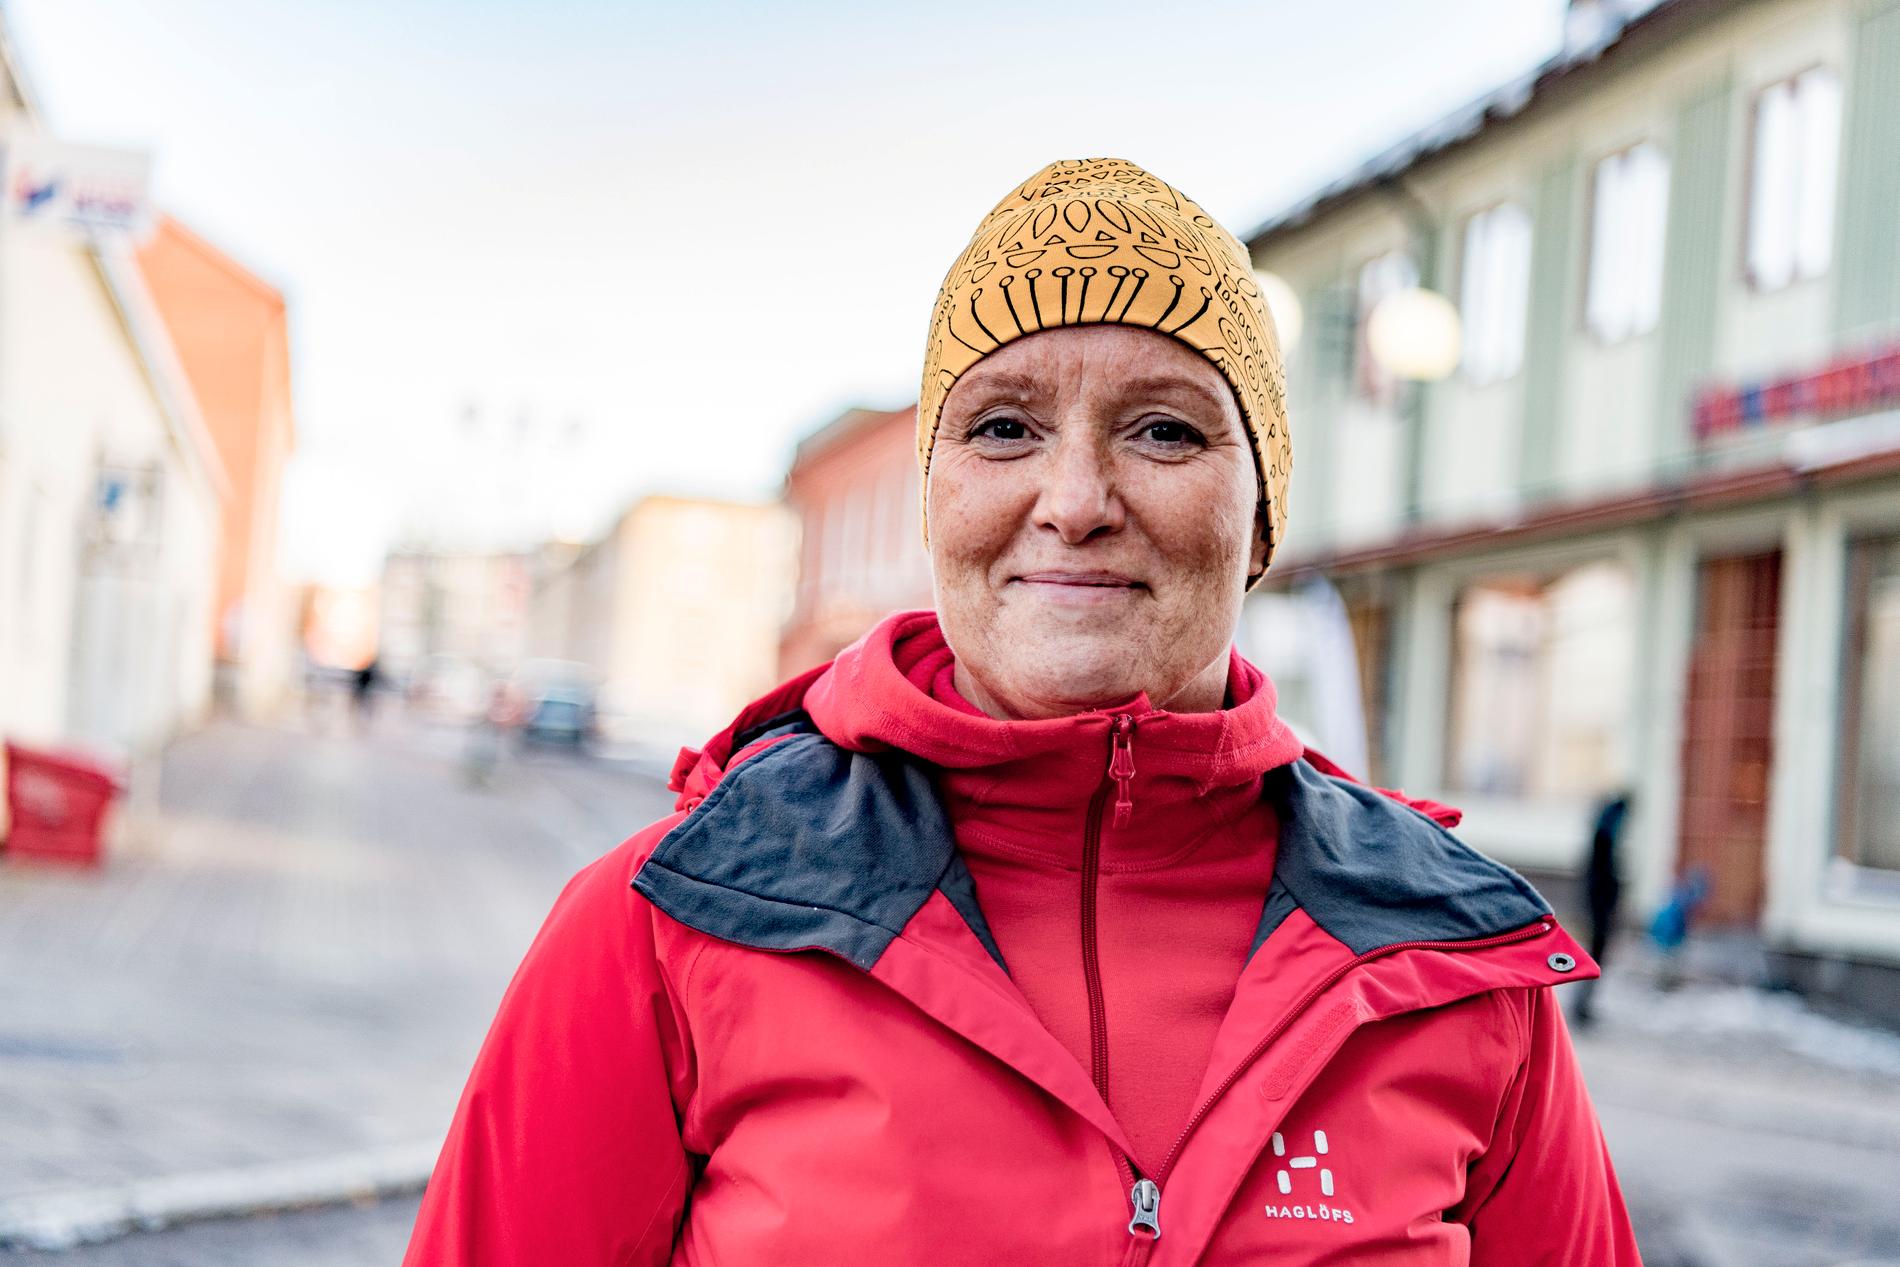 Har det blivit varmare i Kiruna under din livstid? ”Ja, vintrarna kommer senare nu för tiden. Ibland är det till och med snöfritt första advent. Och kanske är det mer regn på somrarna,” säger Nina Jatko Töyrä, 47, lärare, Kiruna.